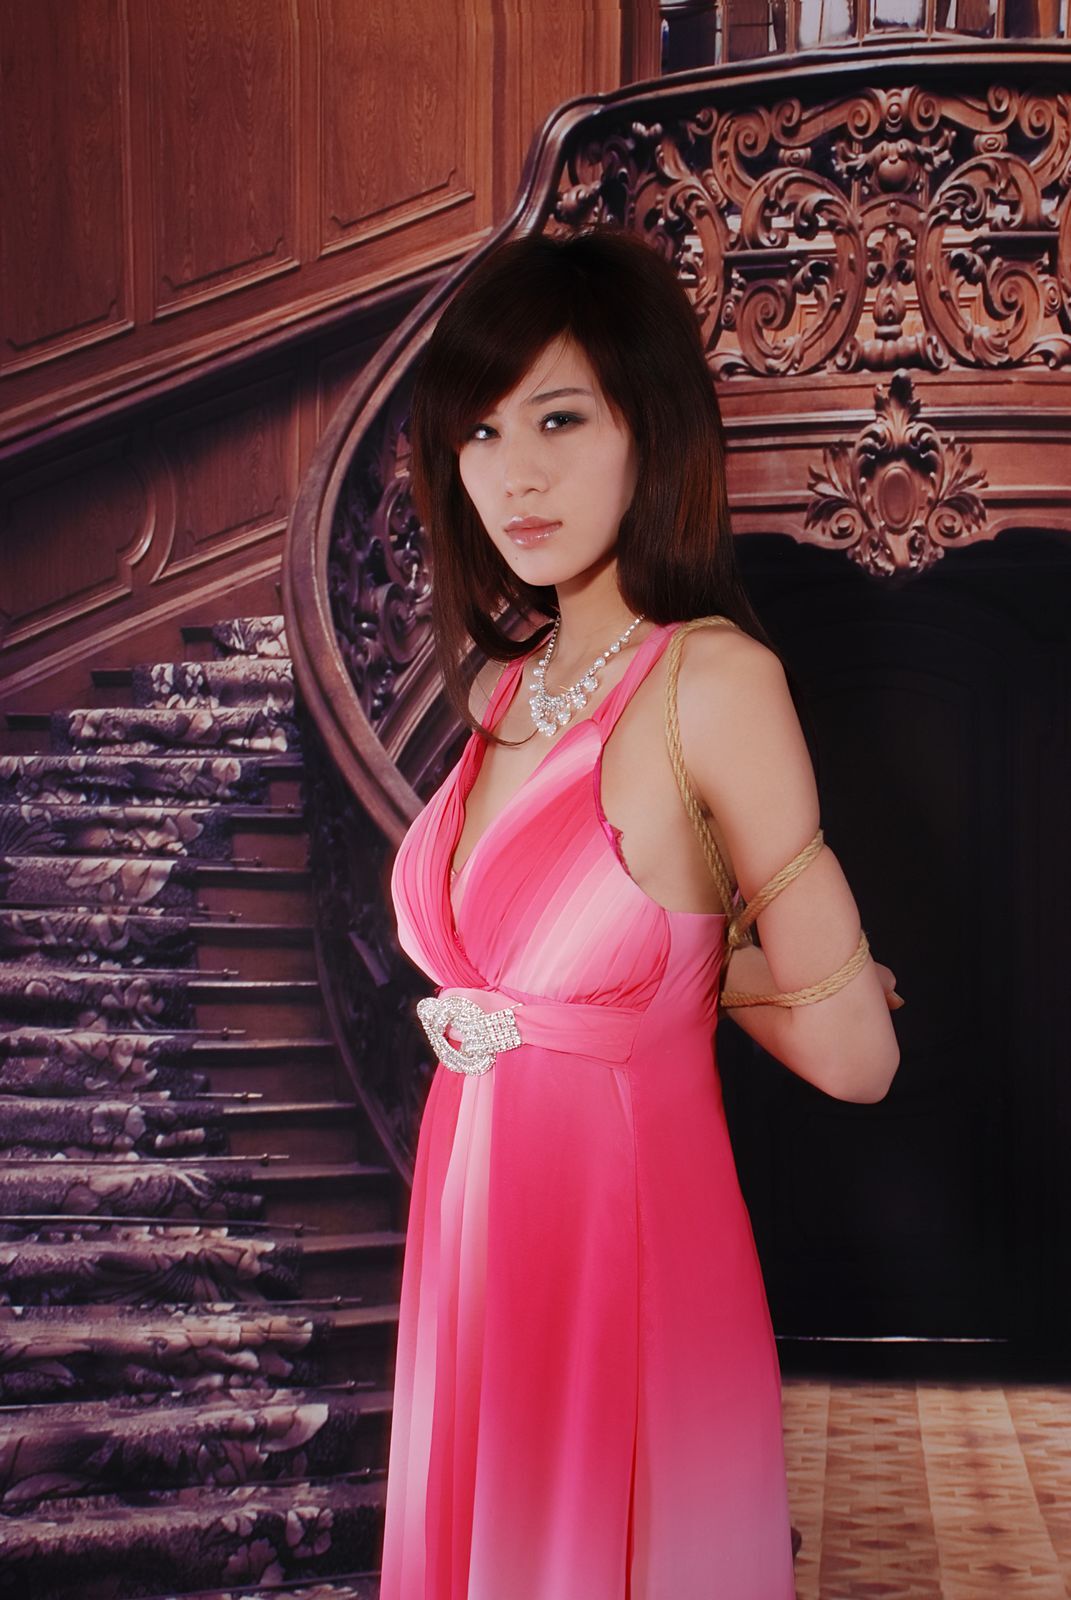 Yuetong: Pink enchantress